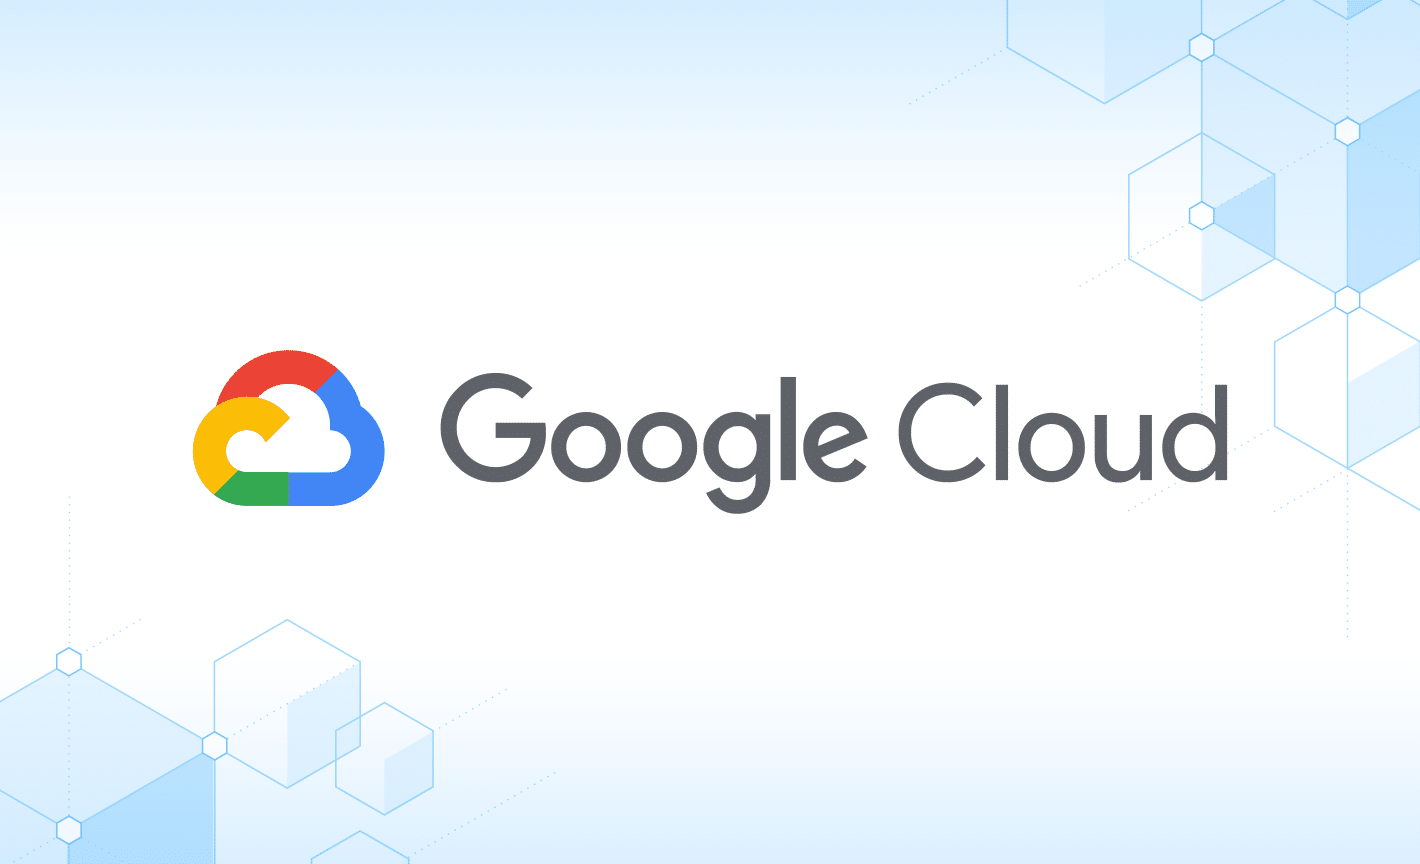 Google logo on blue background